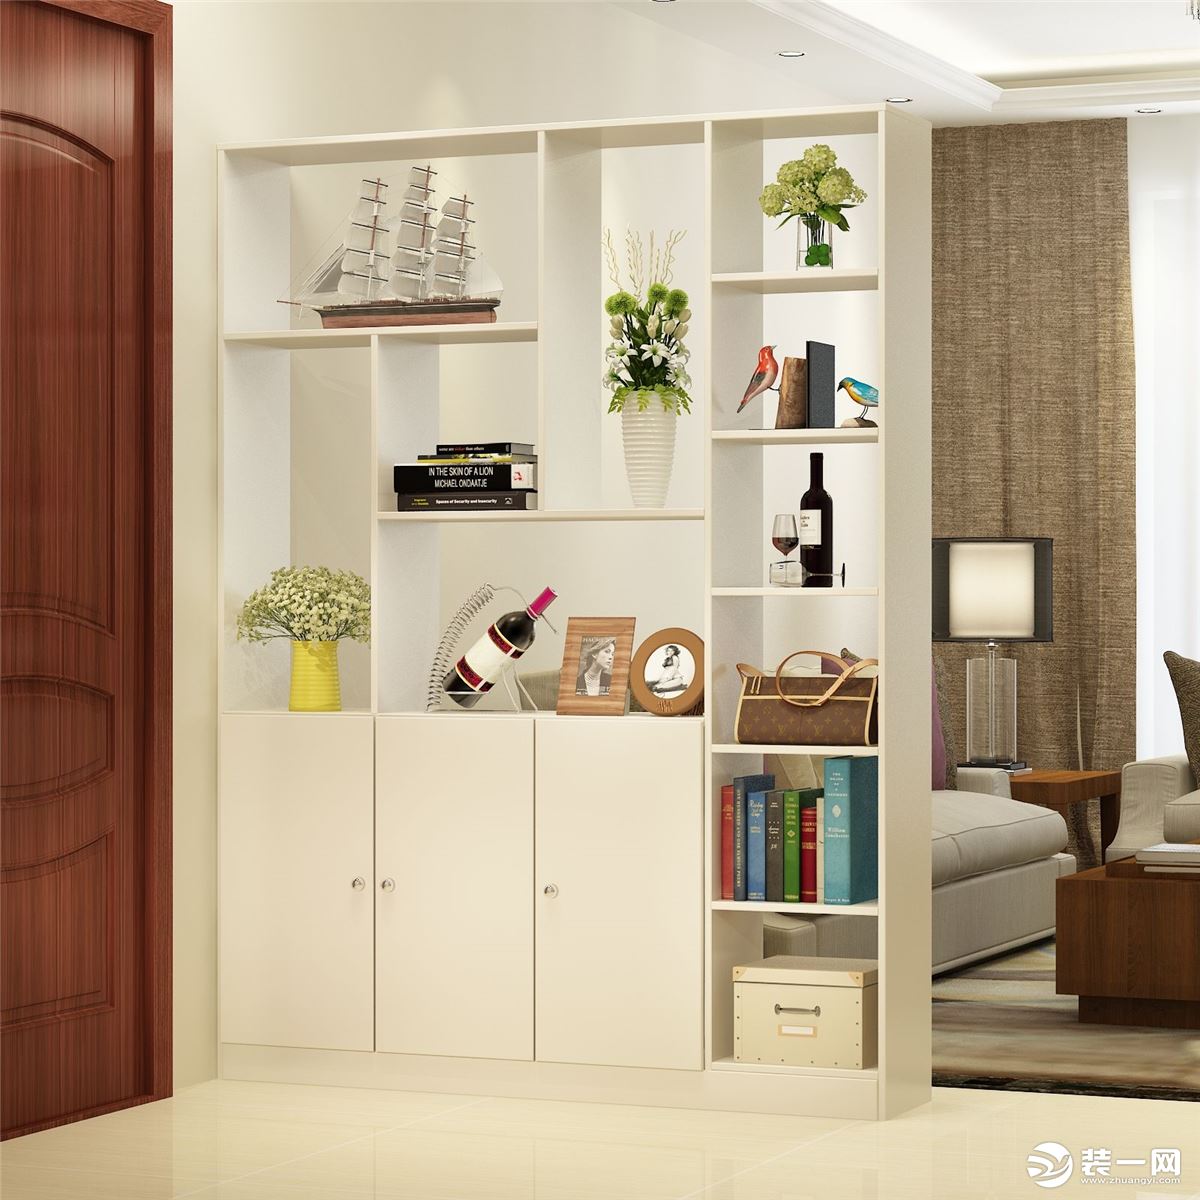 室内走廊柜可以设计成一个个比较大的收纳柜子,可以用来做衣柜或者